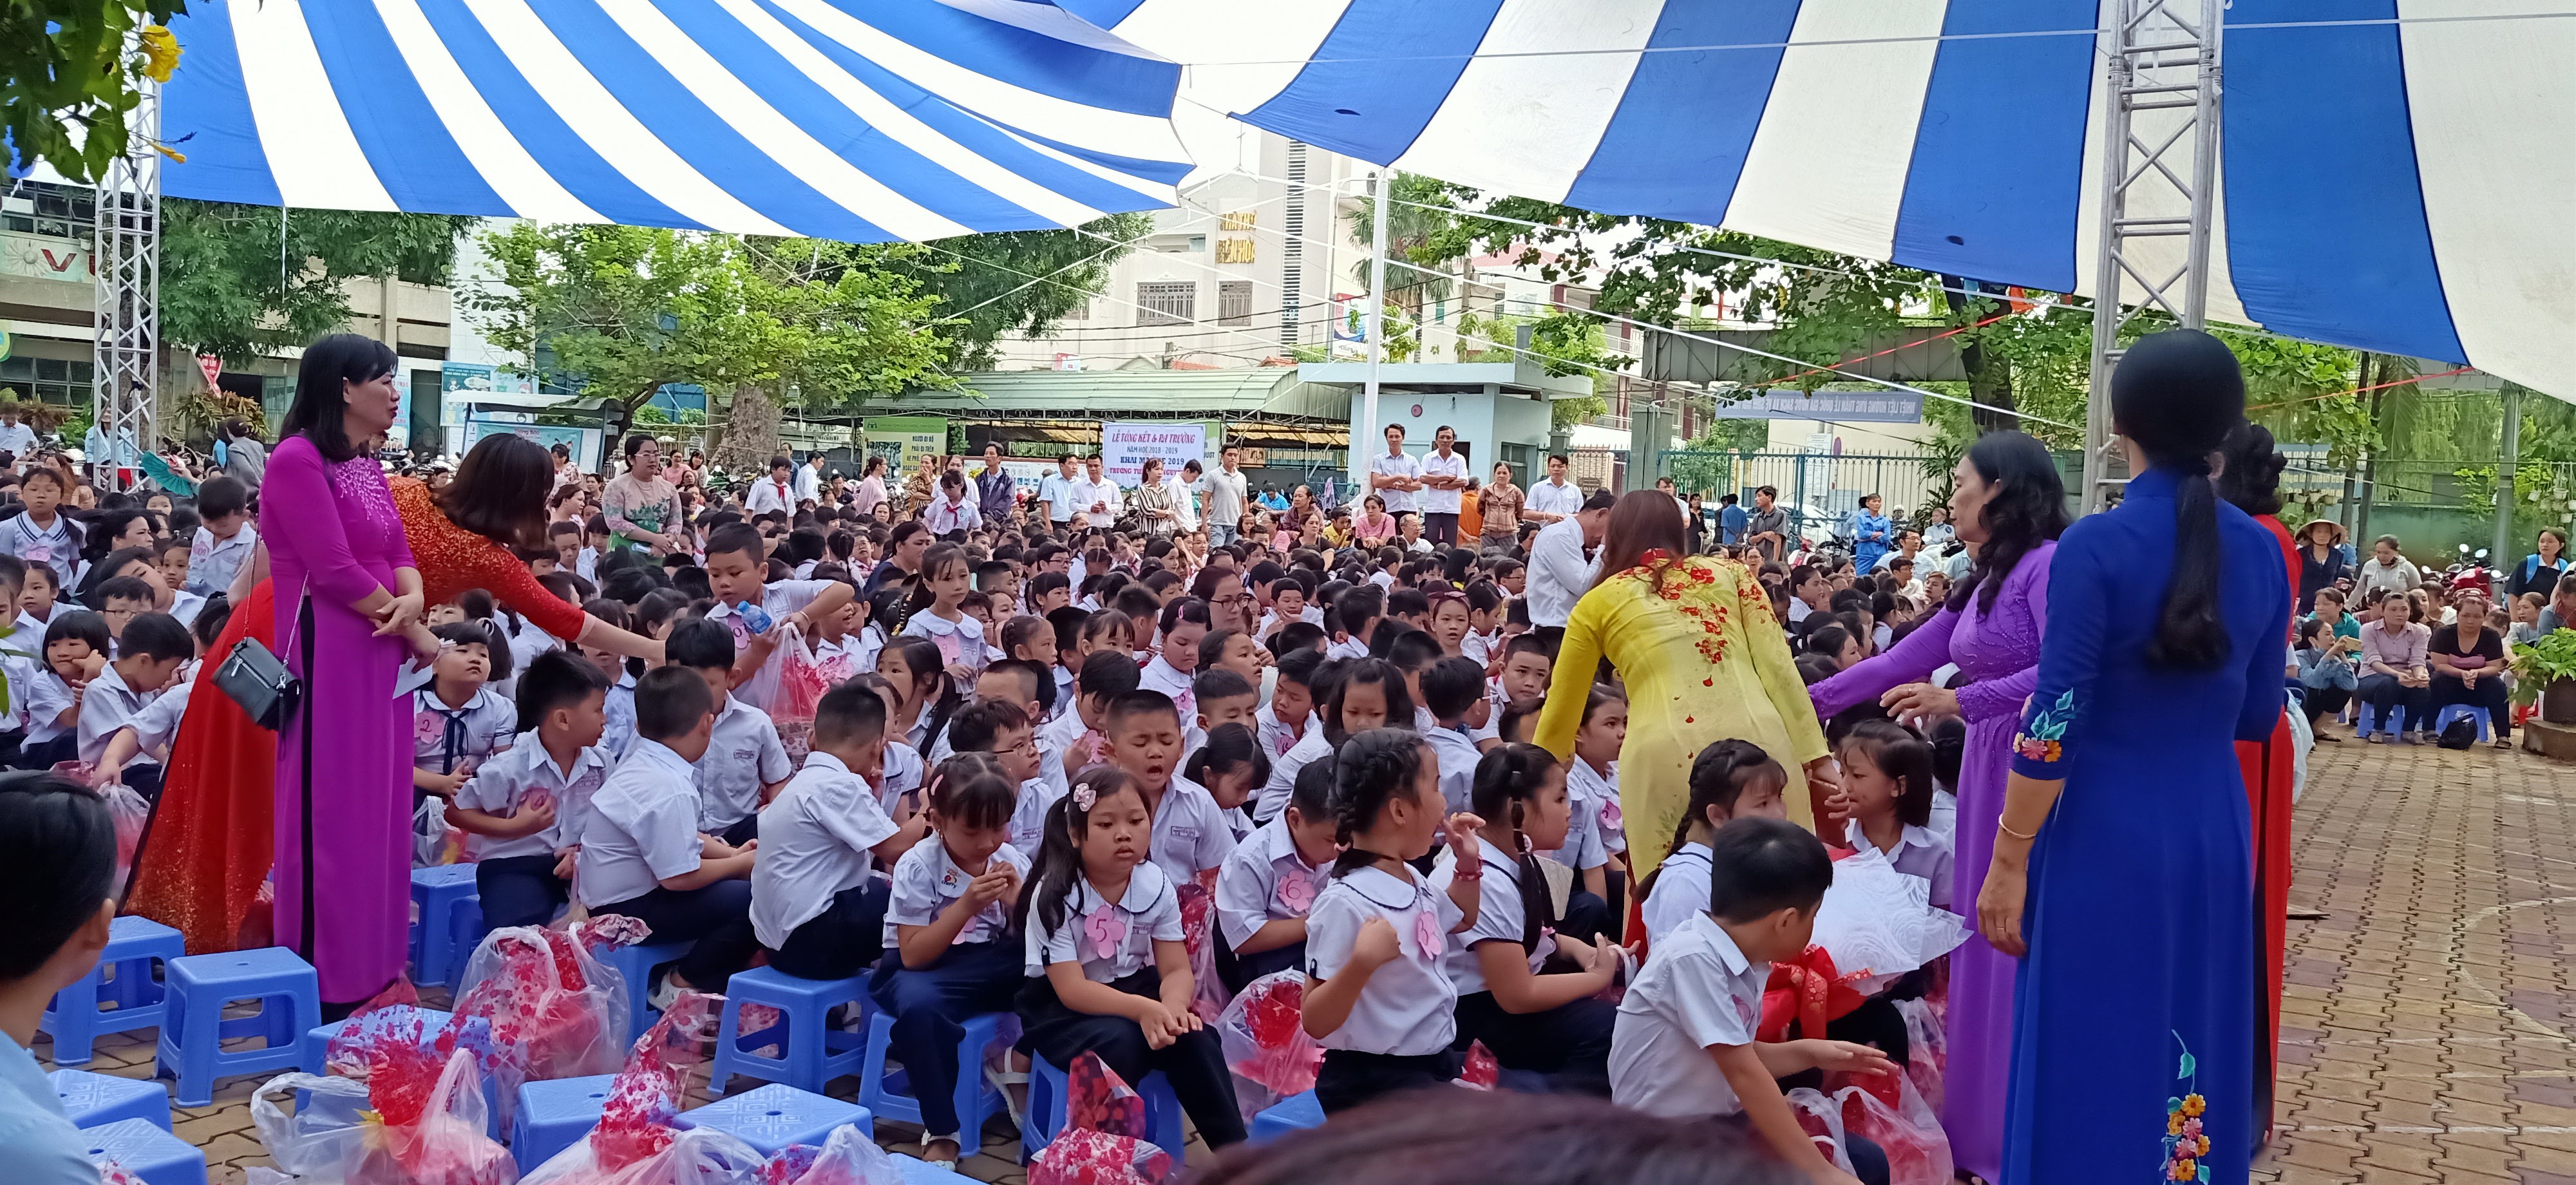 Trường Tiểu học Nguyễn Du, Tp. Biên Hòa tổ chức Tổng kết năm học 2018-2019 và Khai mạc Hè 2019